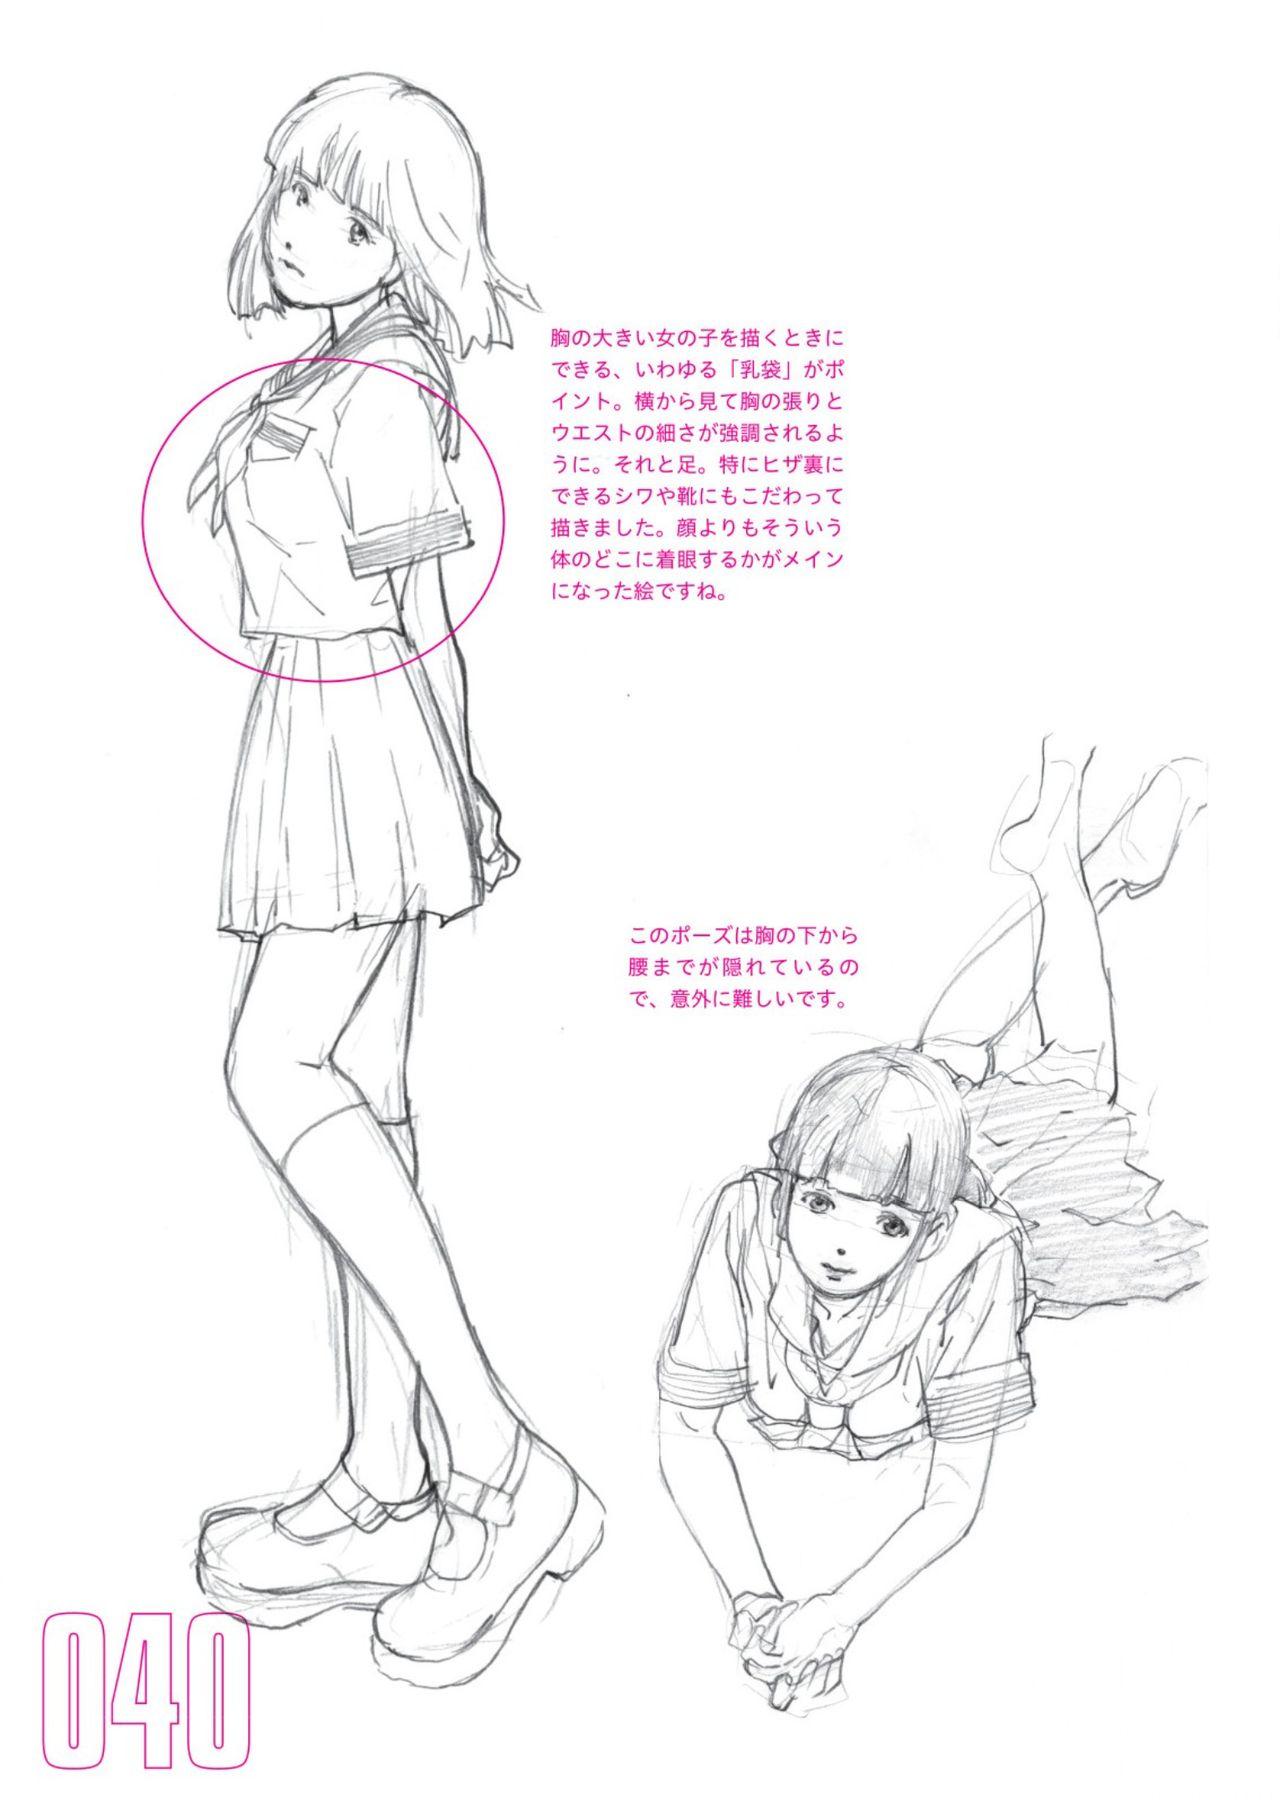 Toru Yoshida Tips for drawing women in 10 minutes 270 Uniforms 41